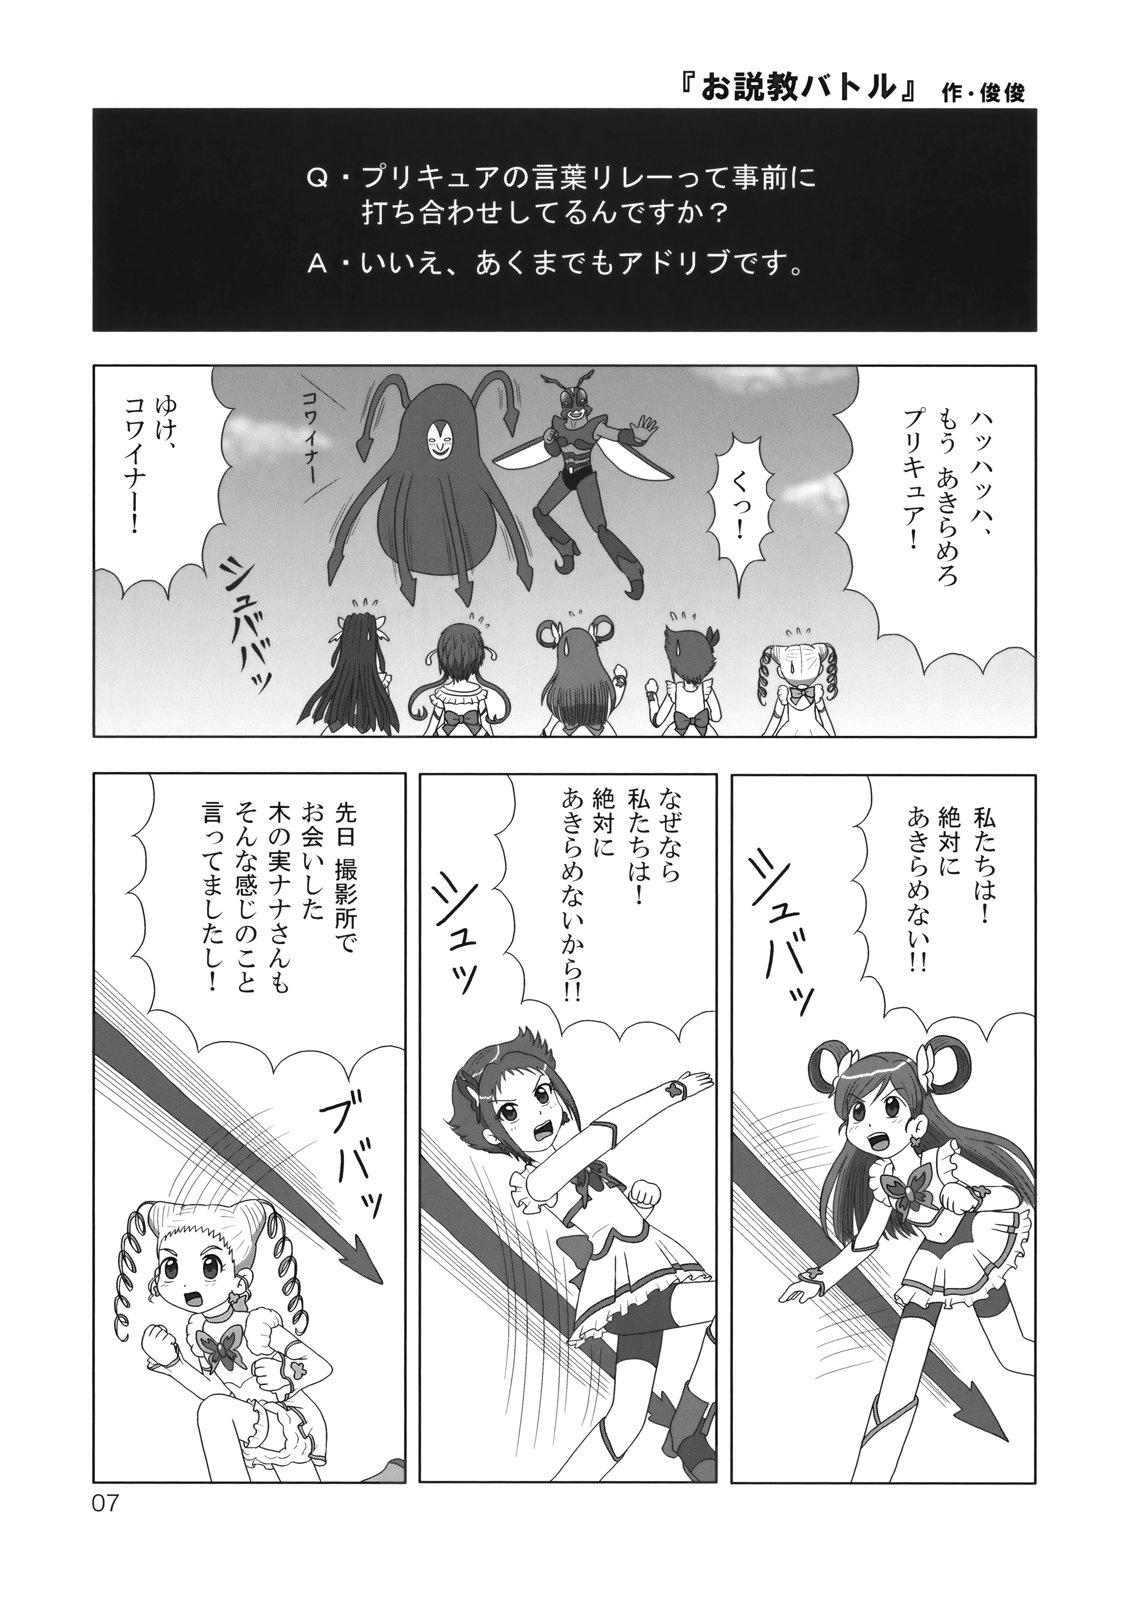 Spooning Burari! Tokimeki Shitsumon Bako - Mitsudomoe Kannagi Nurarihyon no mago Teenporn - Page 6